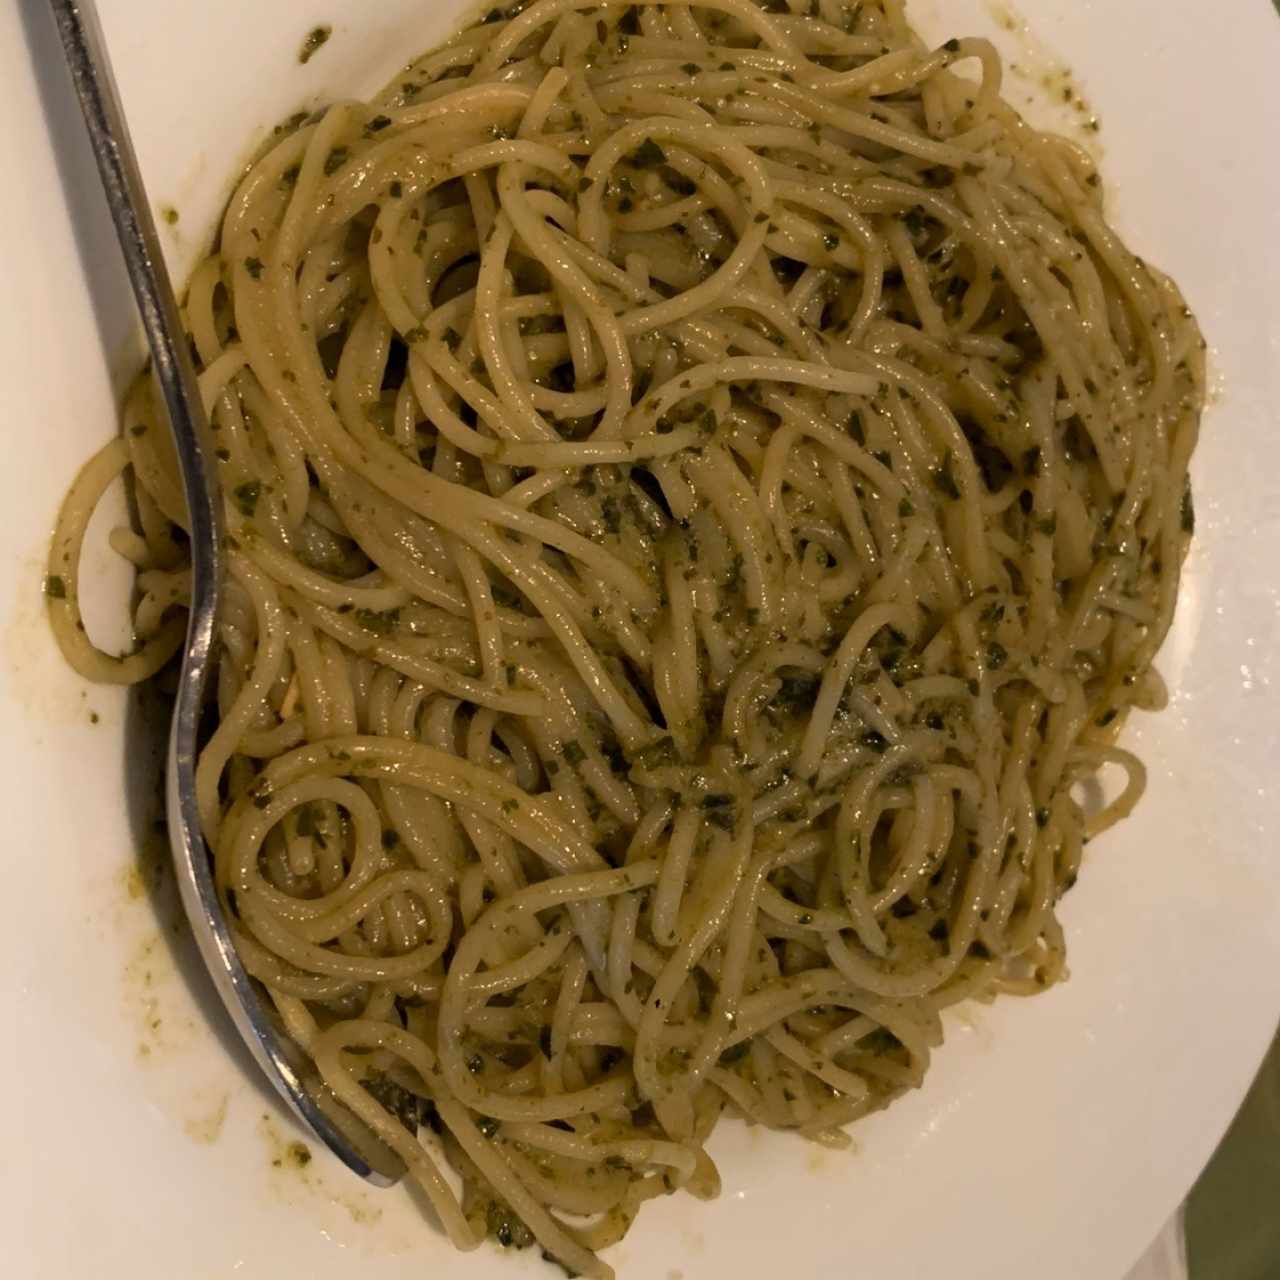 Spaghetti al Pesto